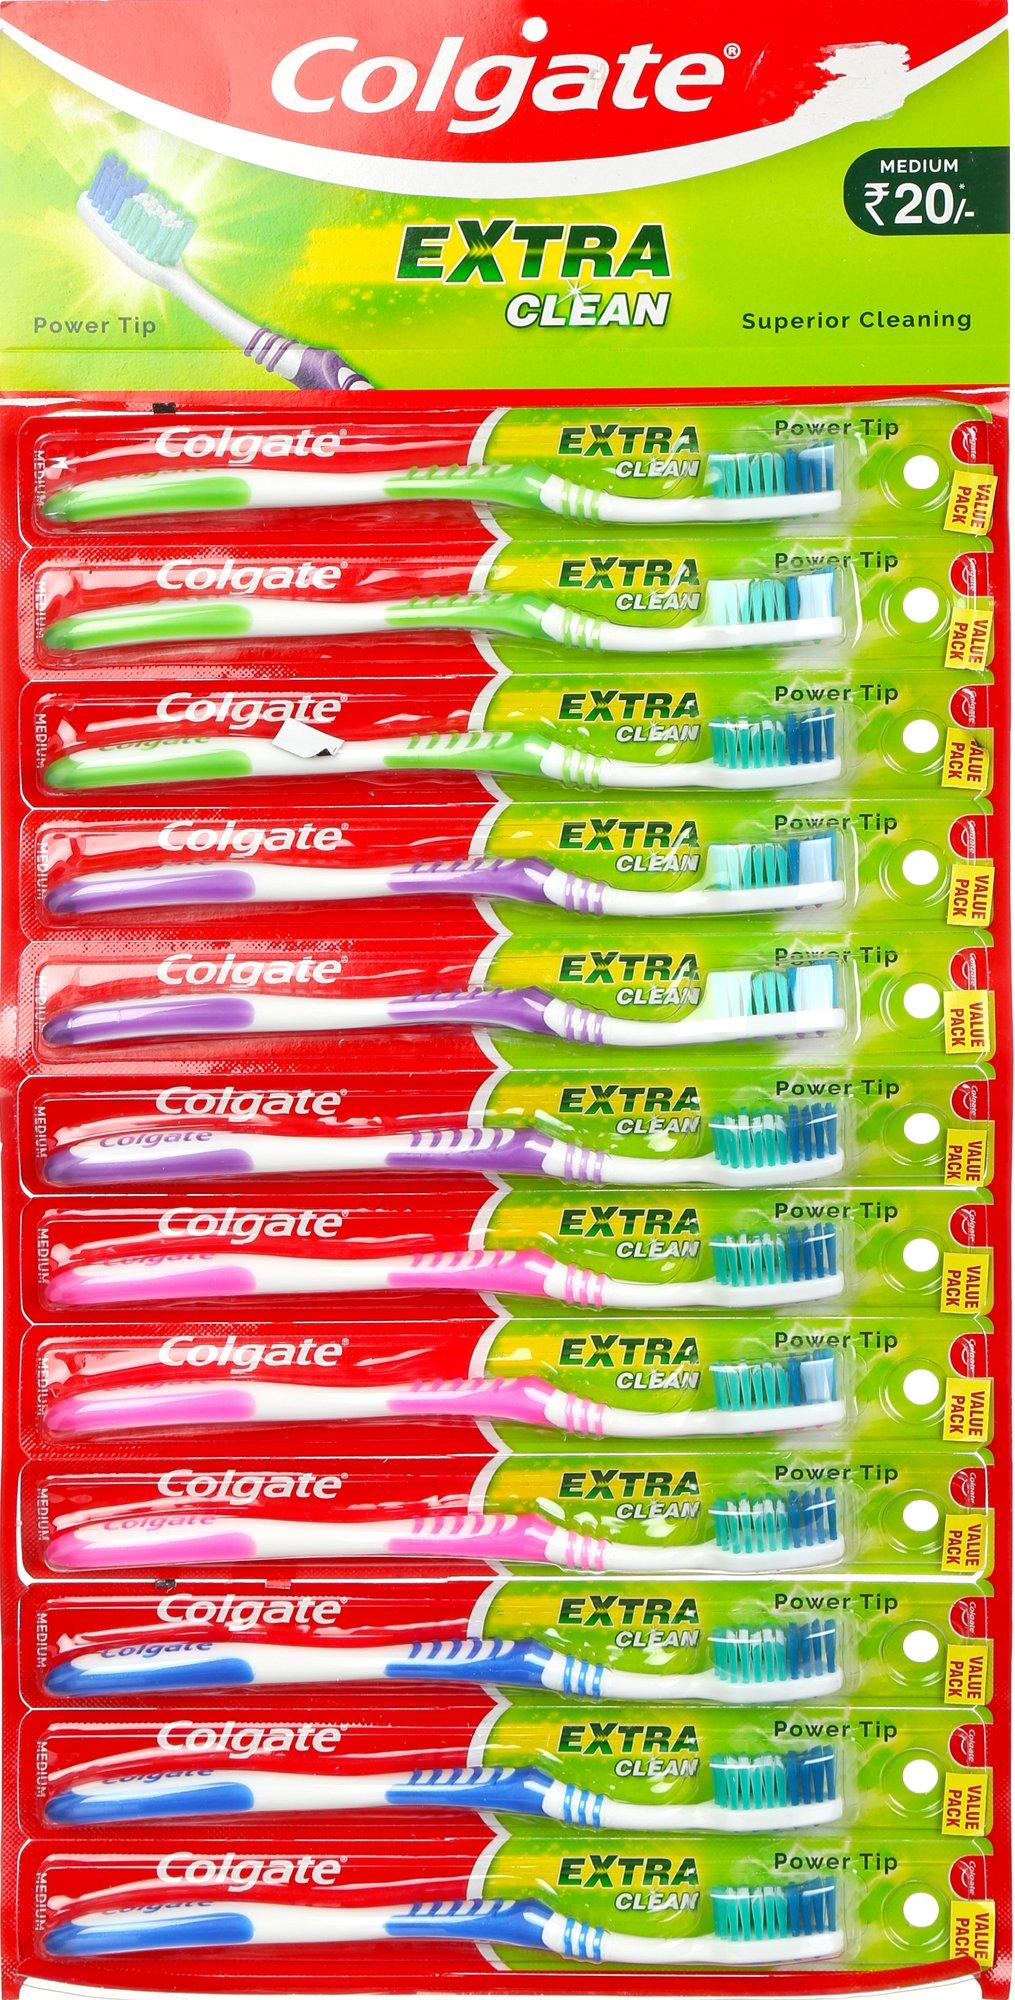 12 Pk Power Tip Toothbrushes